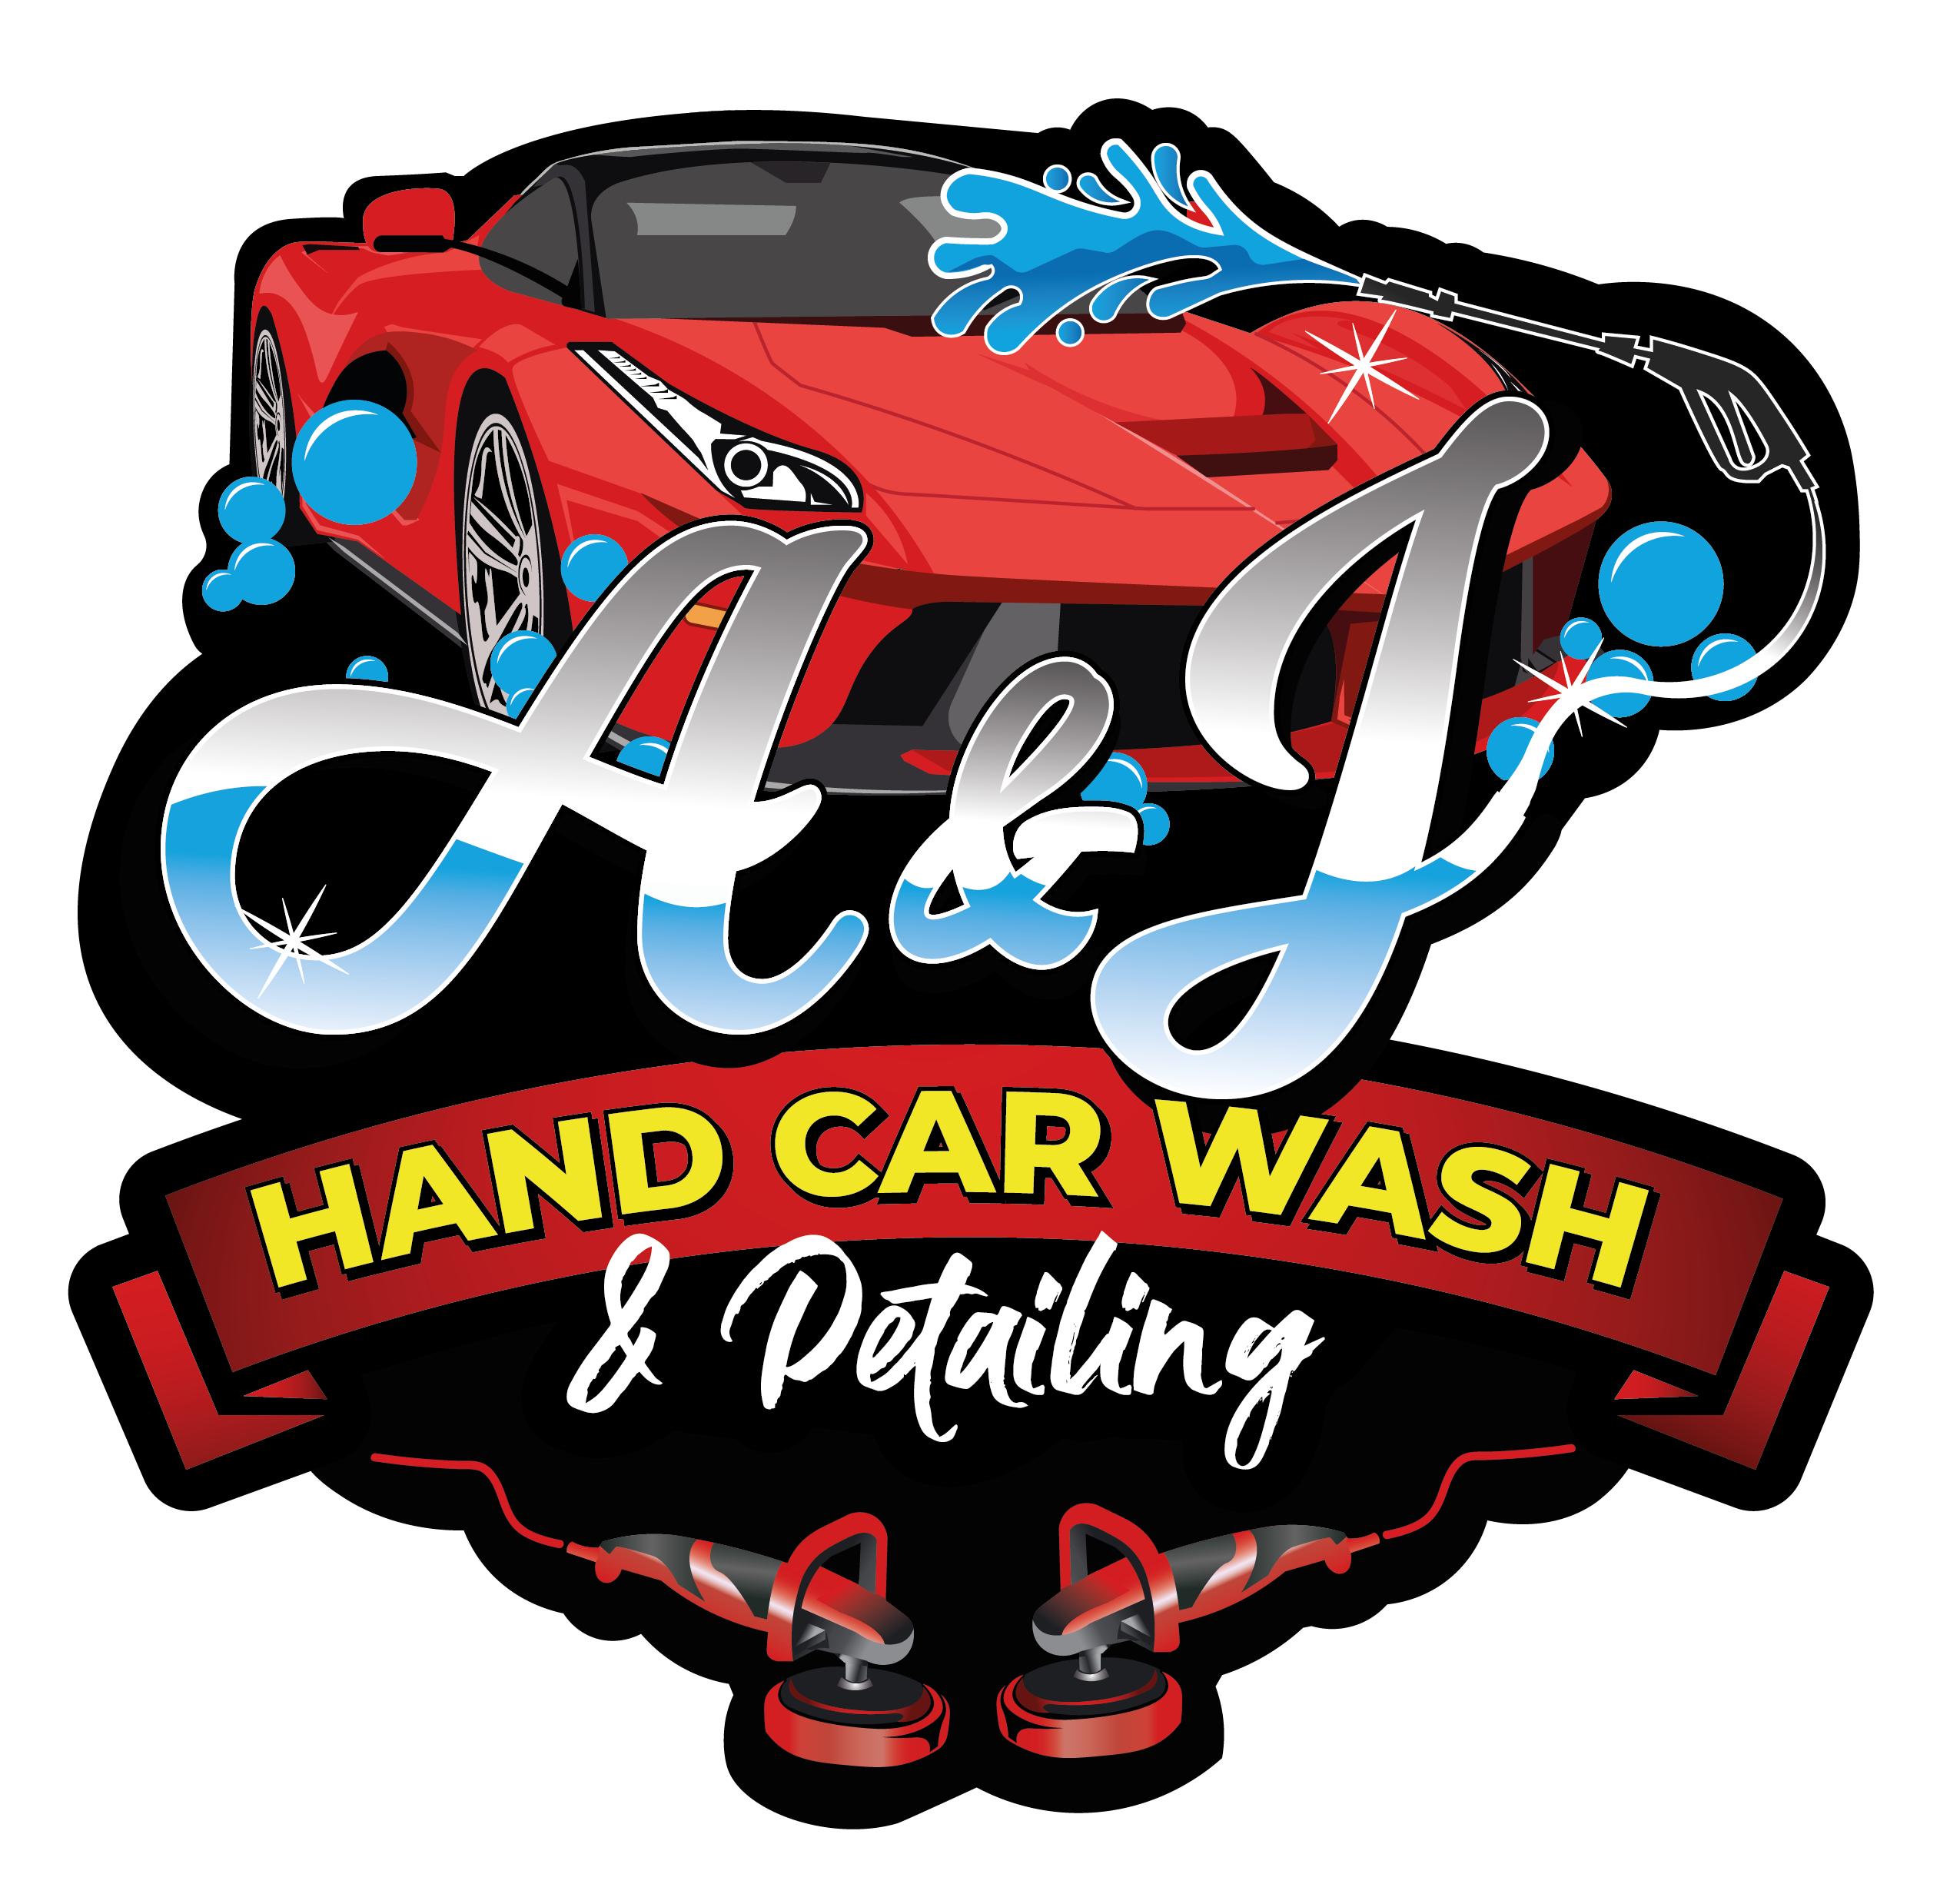 A&J Hand Carwash LLC